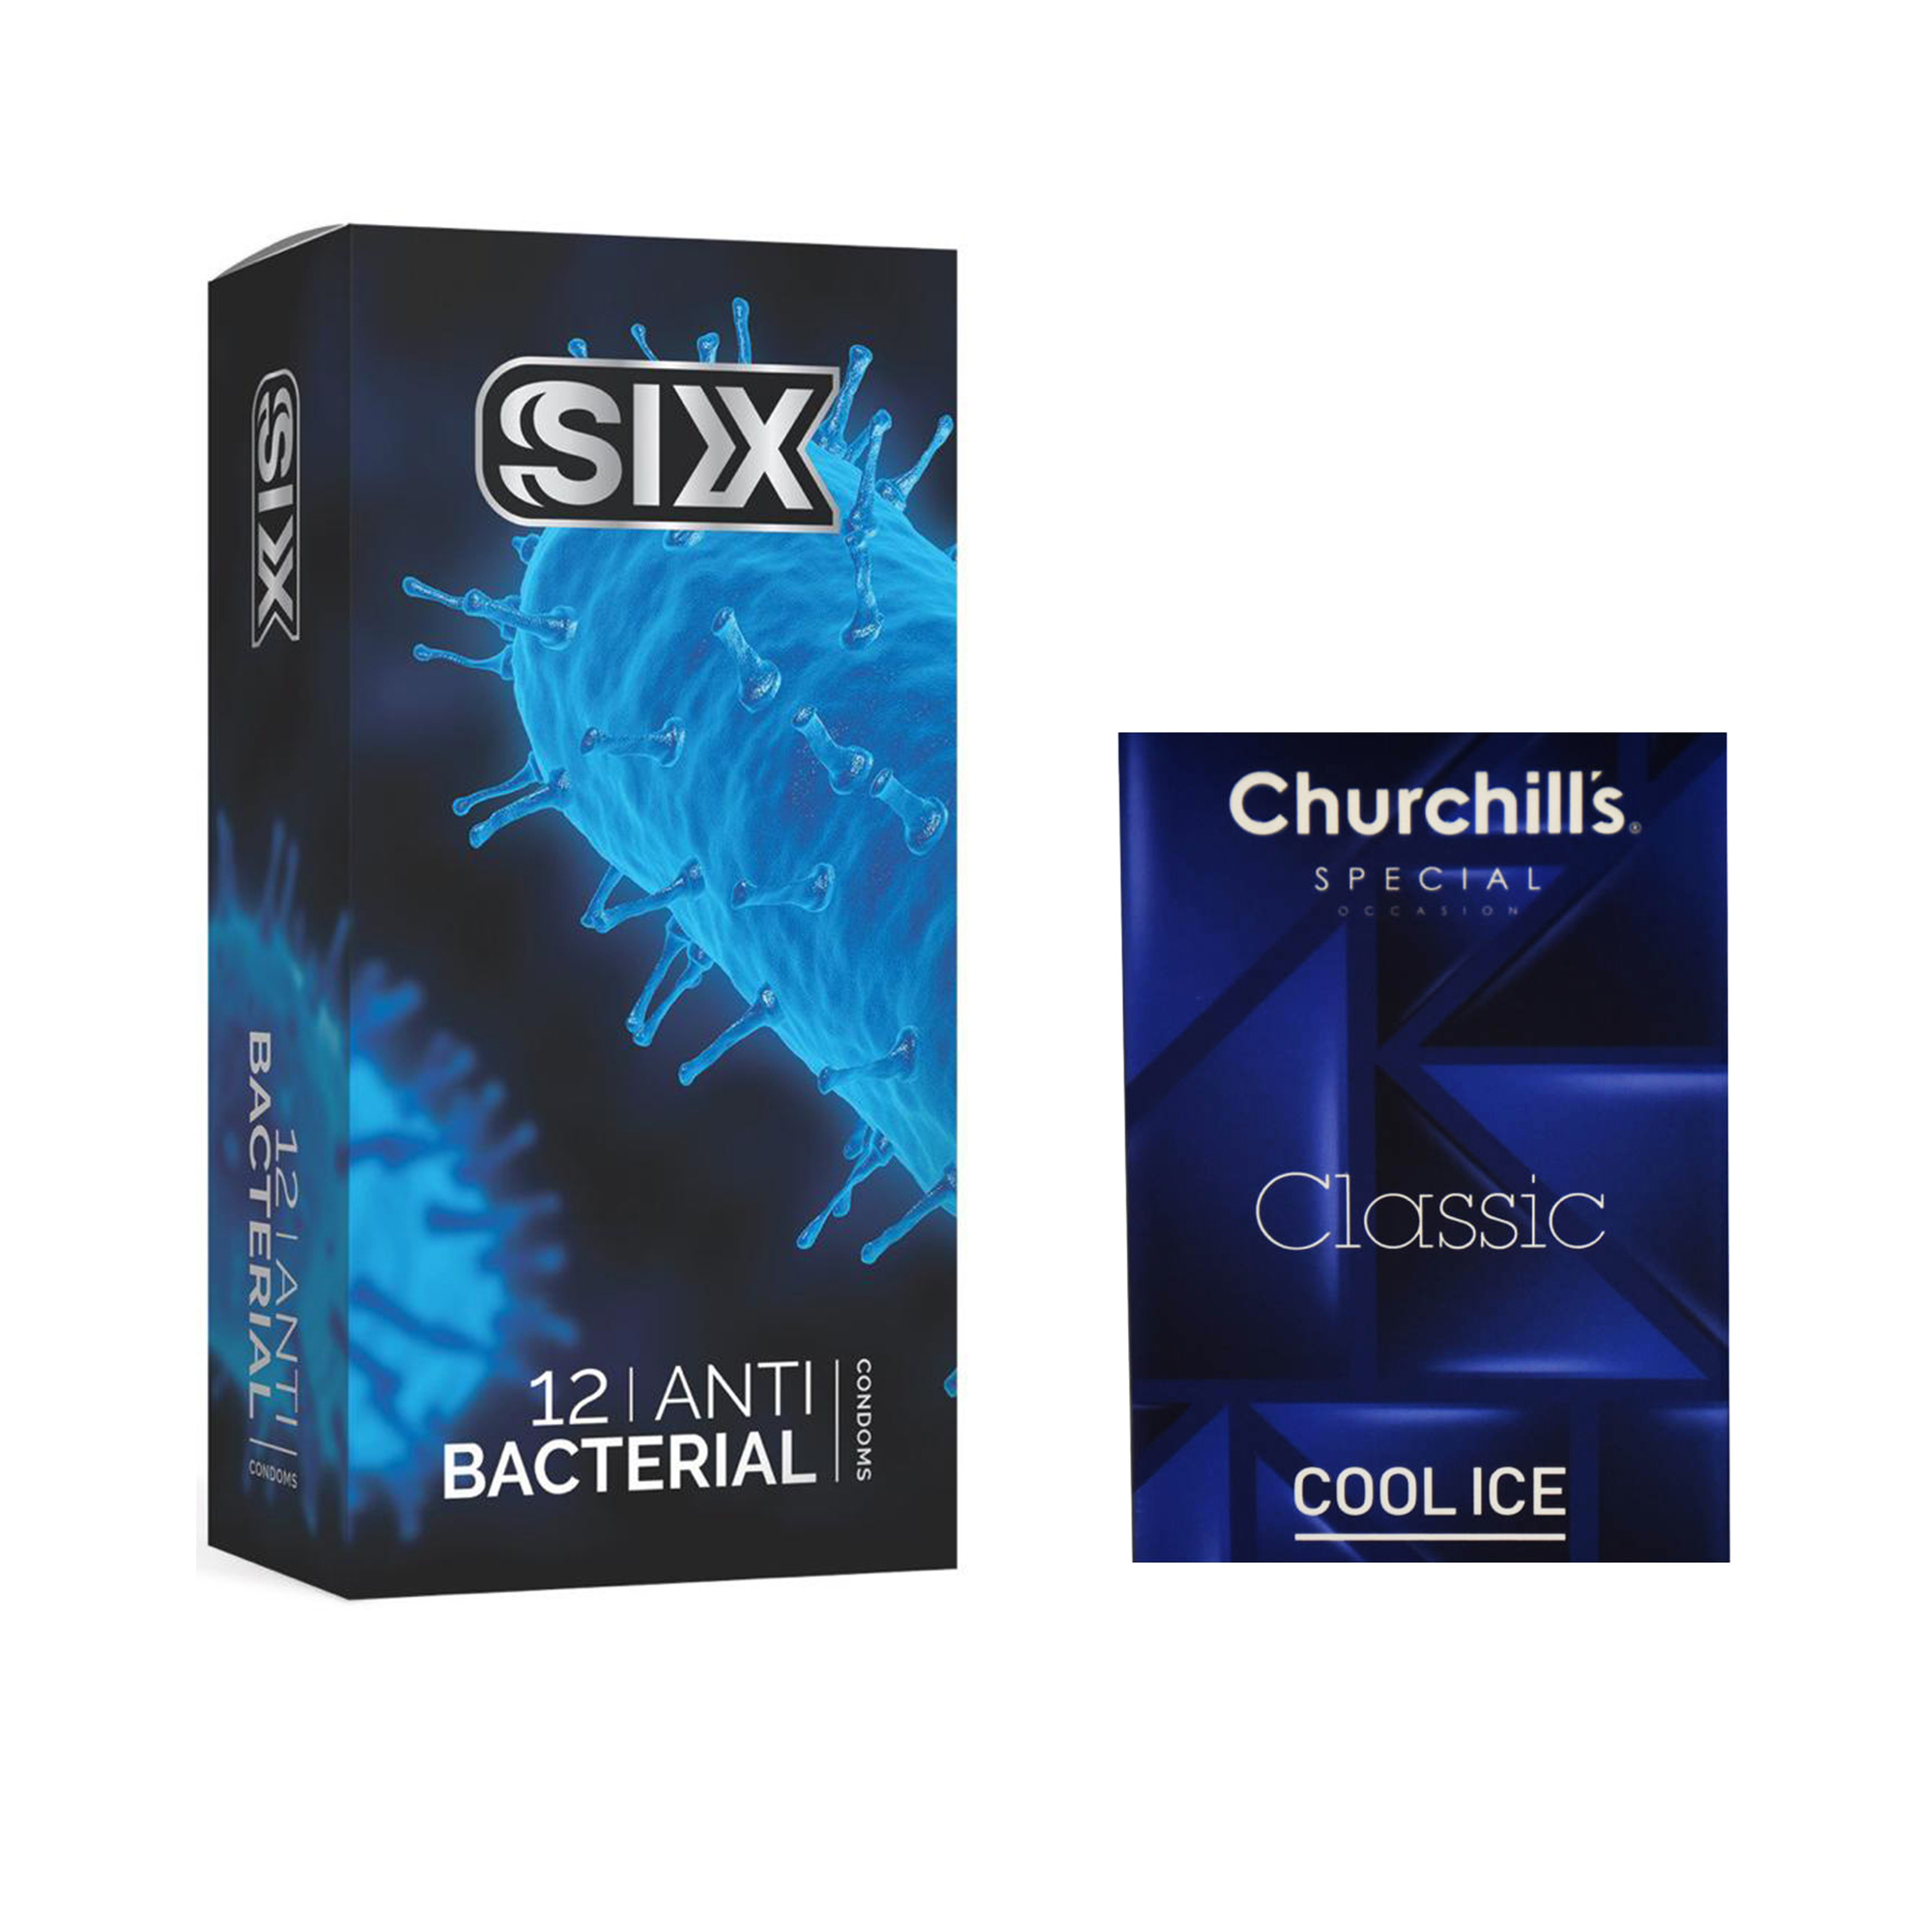 کاندوم سیکس مدل Anti Bacterial بسته 12 عددی به همراه کاندوم چرچیلز مدل Cool Ice بسته 3 عددی